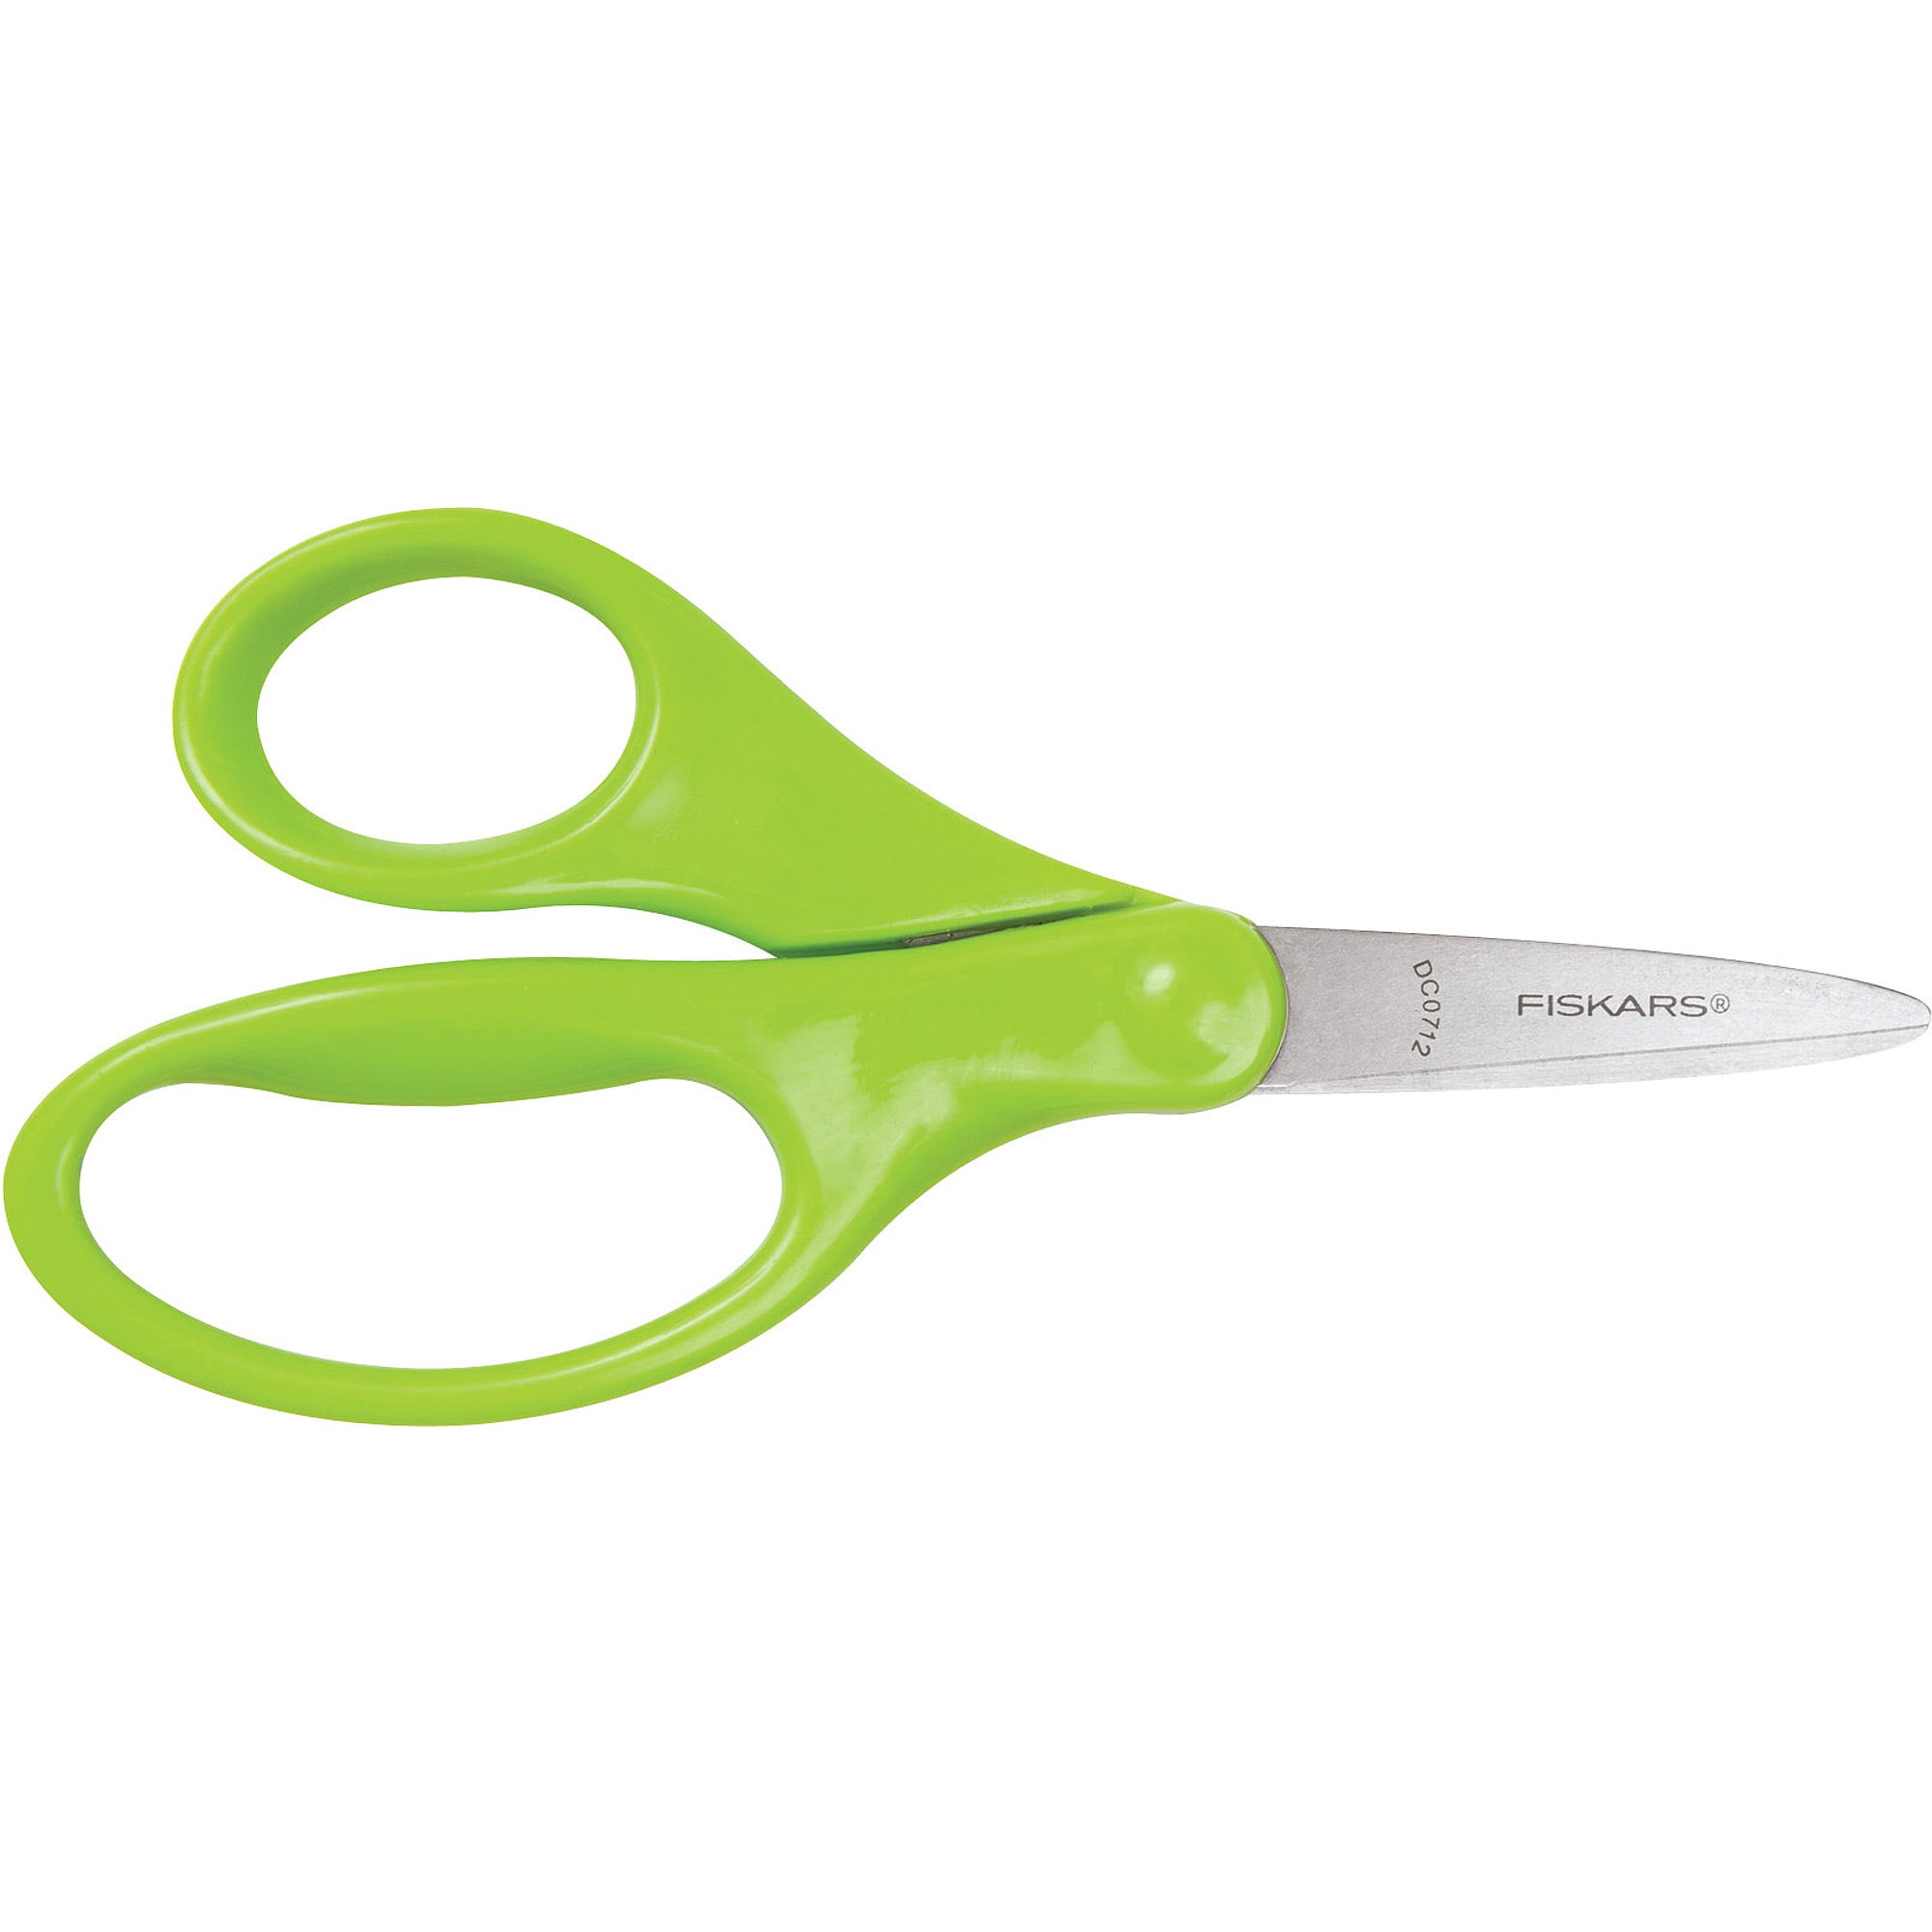 Stanley Minnow® 5 Kids Scissors, Pointed Tip, Green